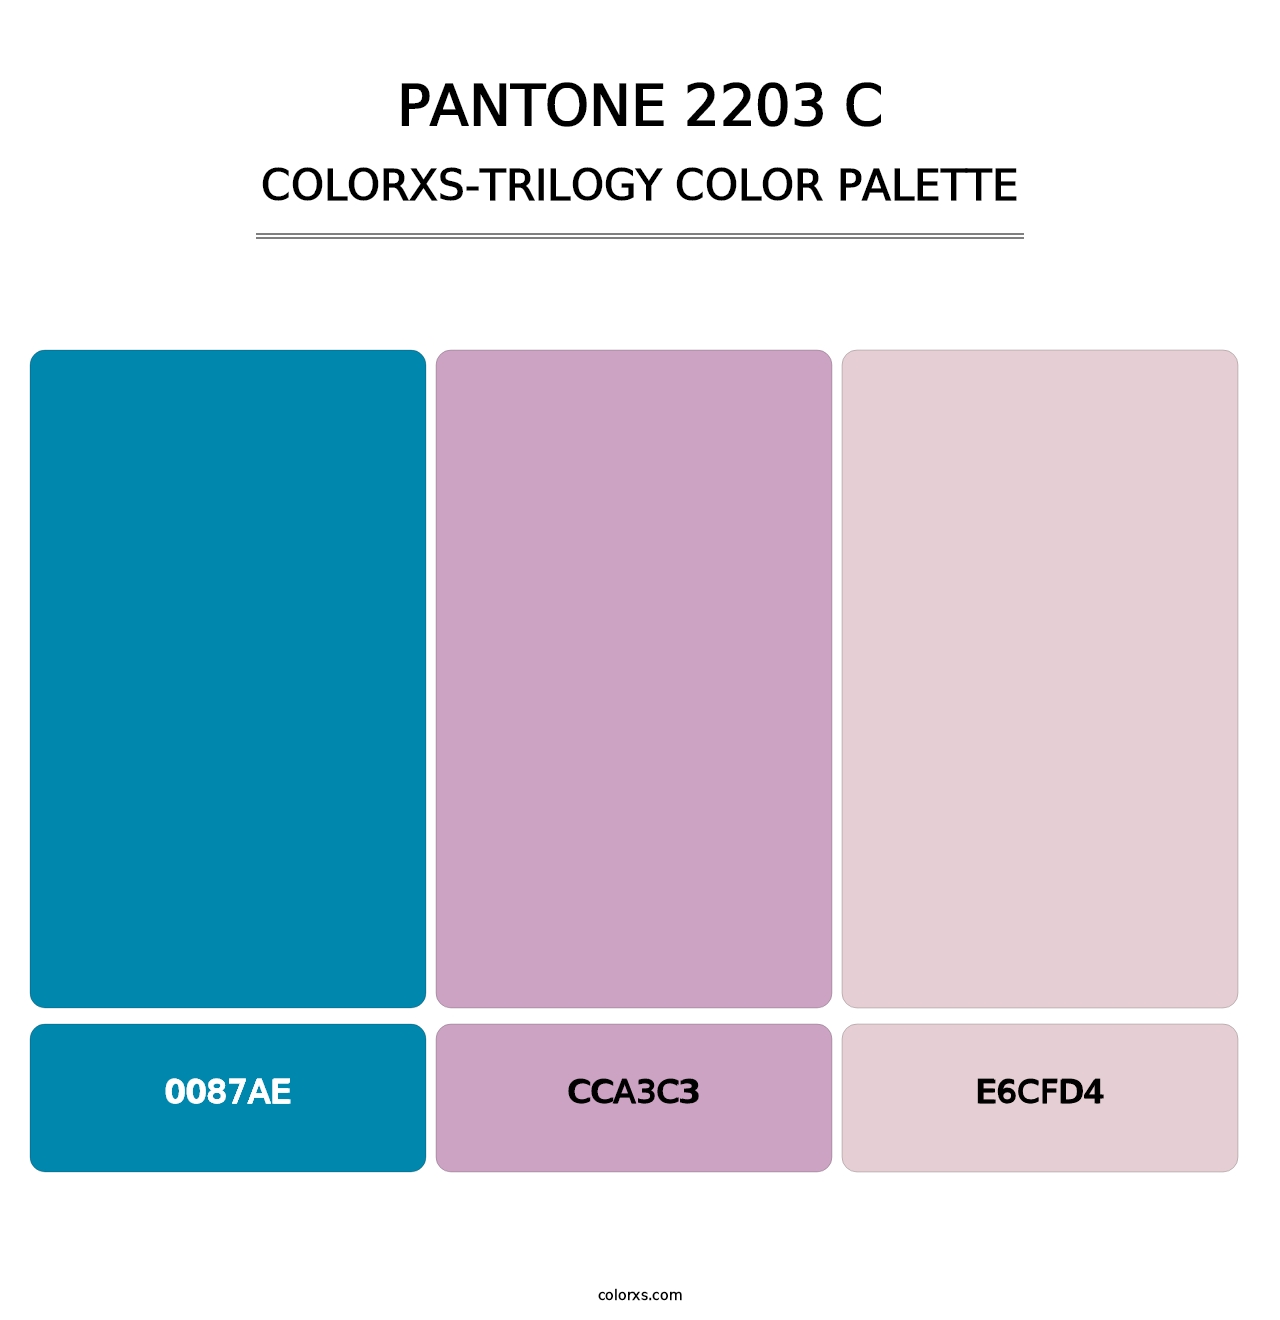 PANTONE 2203 C - Colorxs Trilogy Palette